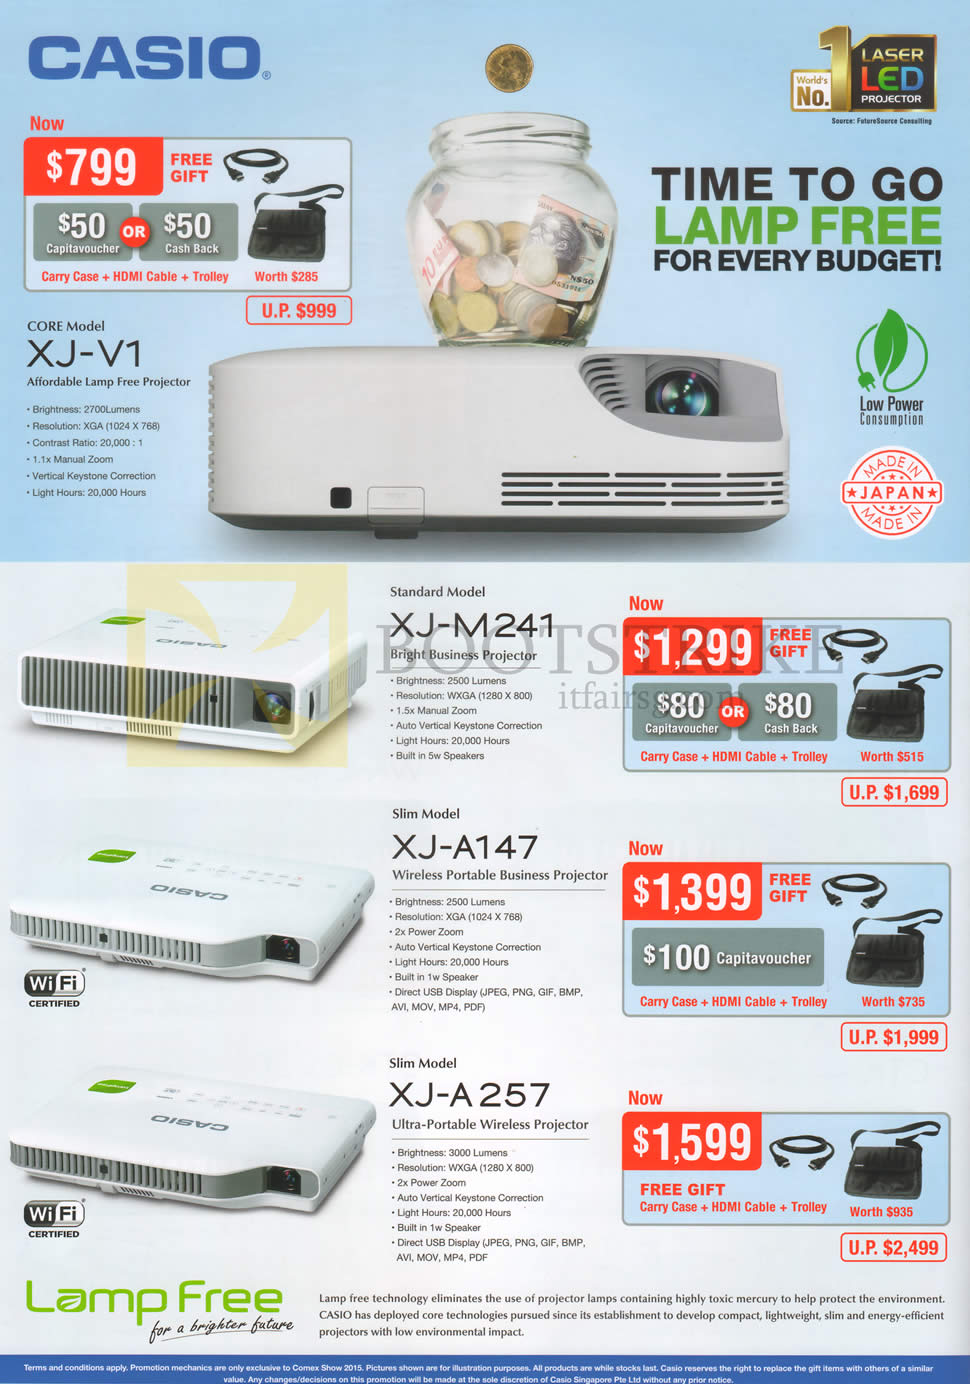 COMEX 2015 price list image brochure of Casio Projectors XJ-V1, XJ-M241, XJ-A147, XJ-A257